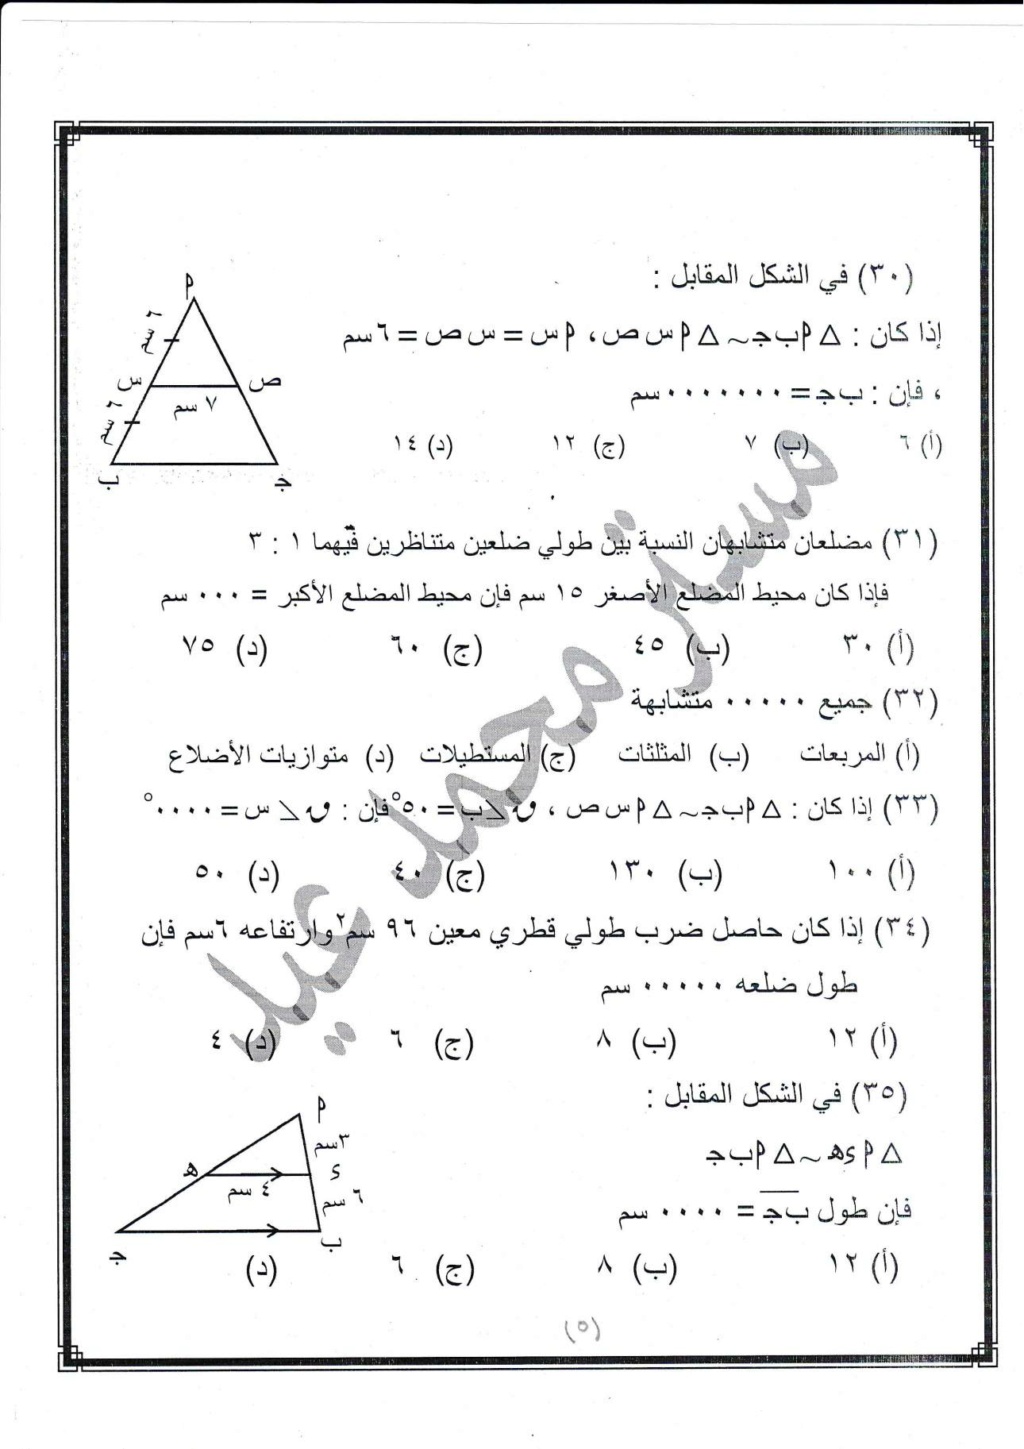 مراجعة رياضيات للصف الثانى الإعدادى على مقرر شهر إبريل مستر / محمد عيد 17449410